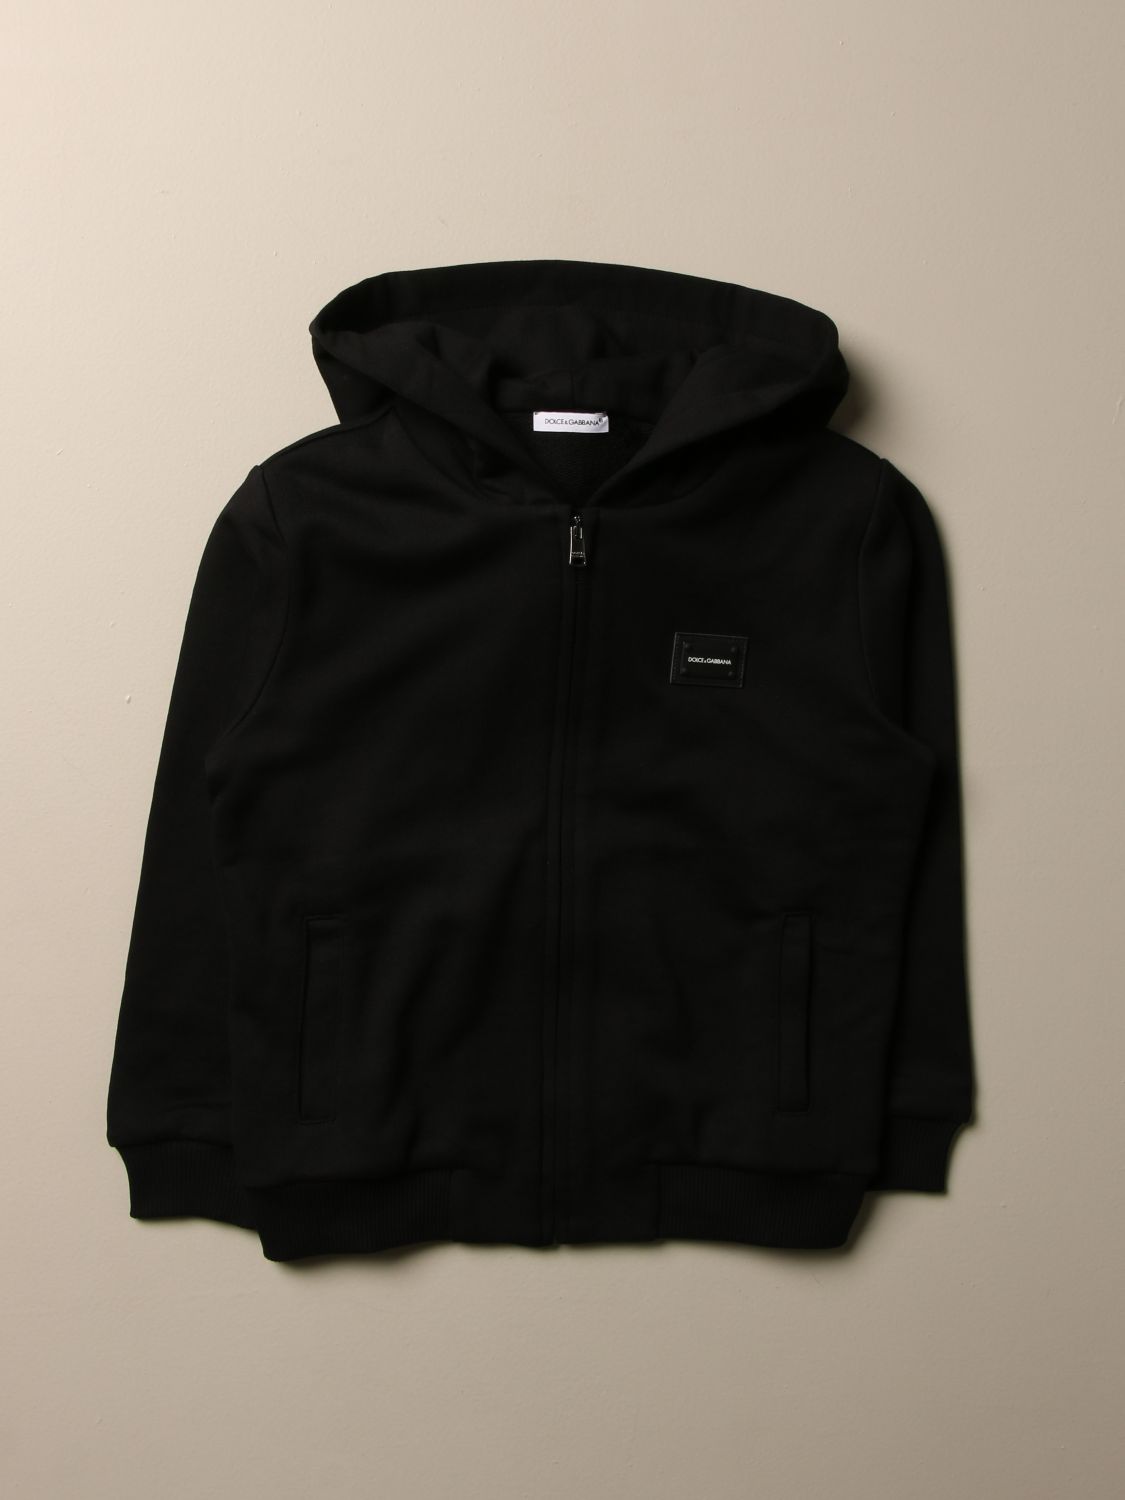 d&g black hoodie